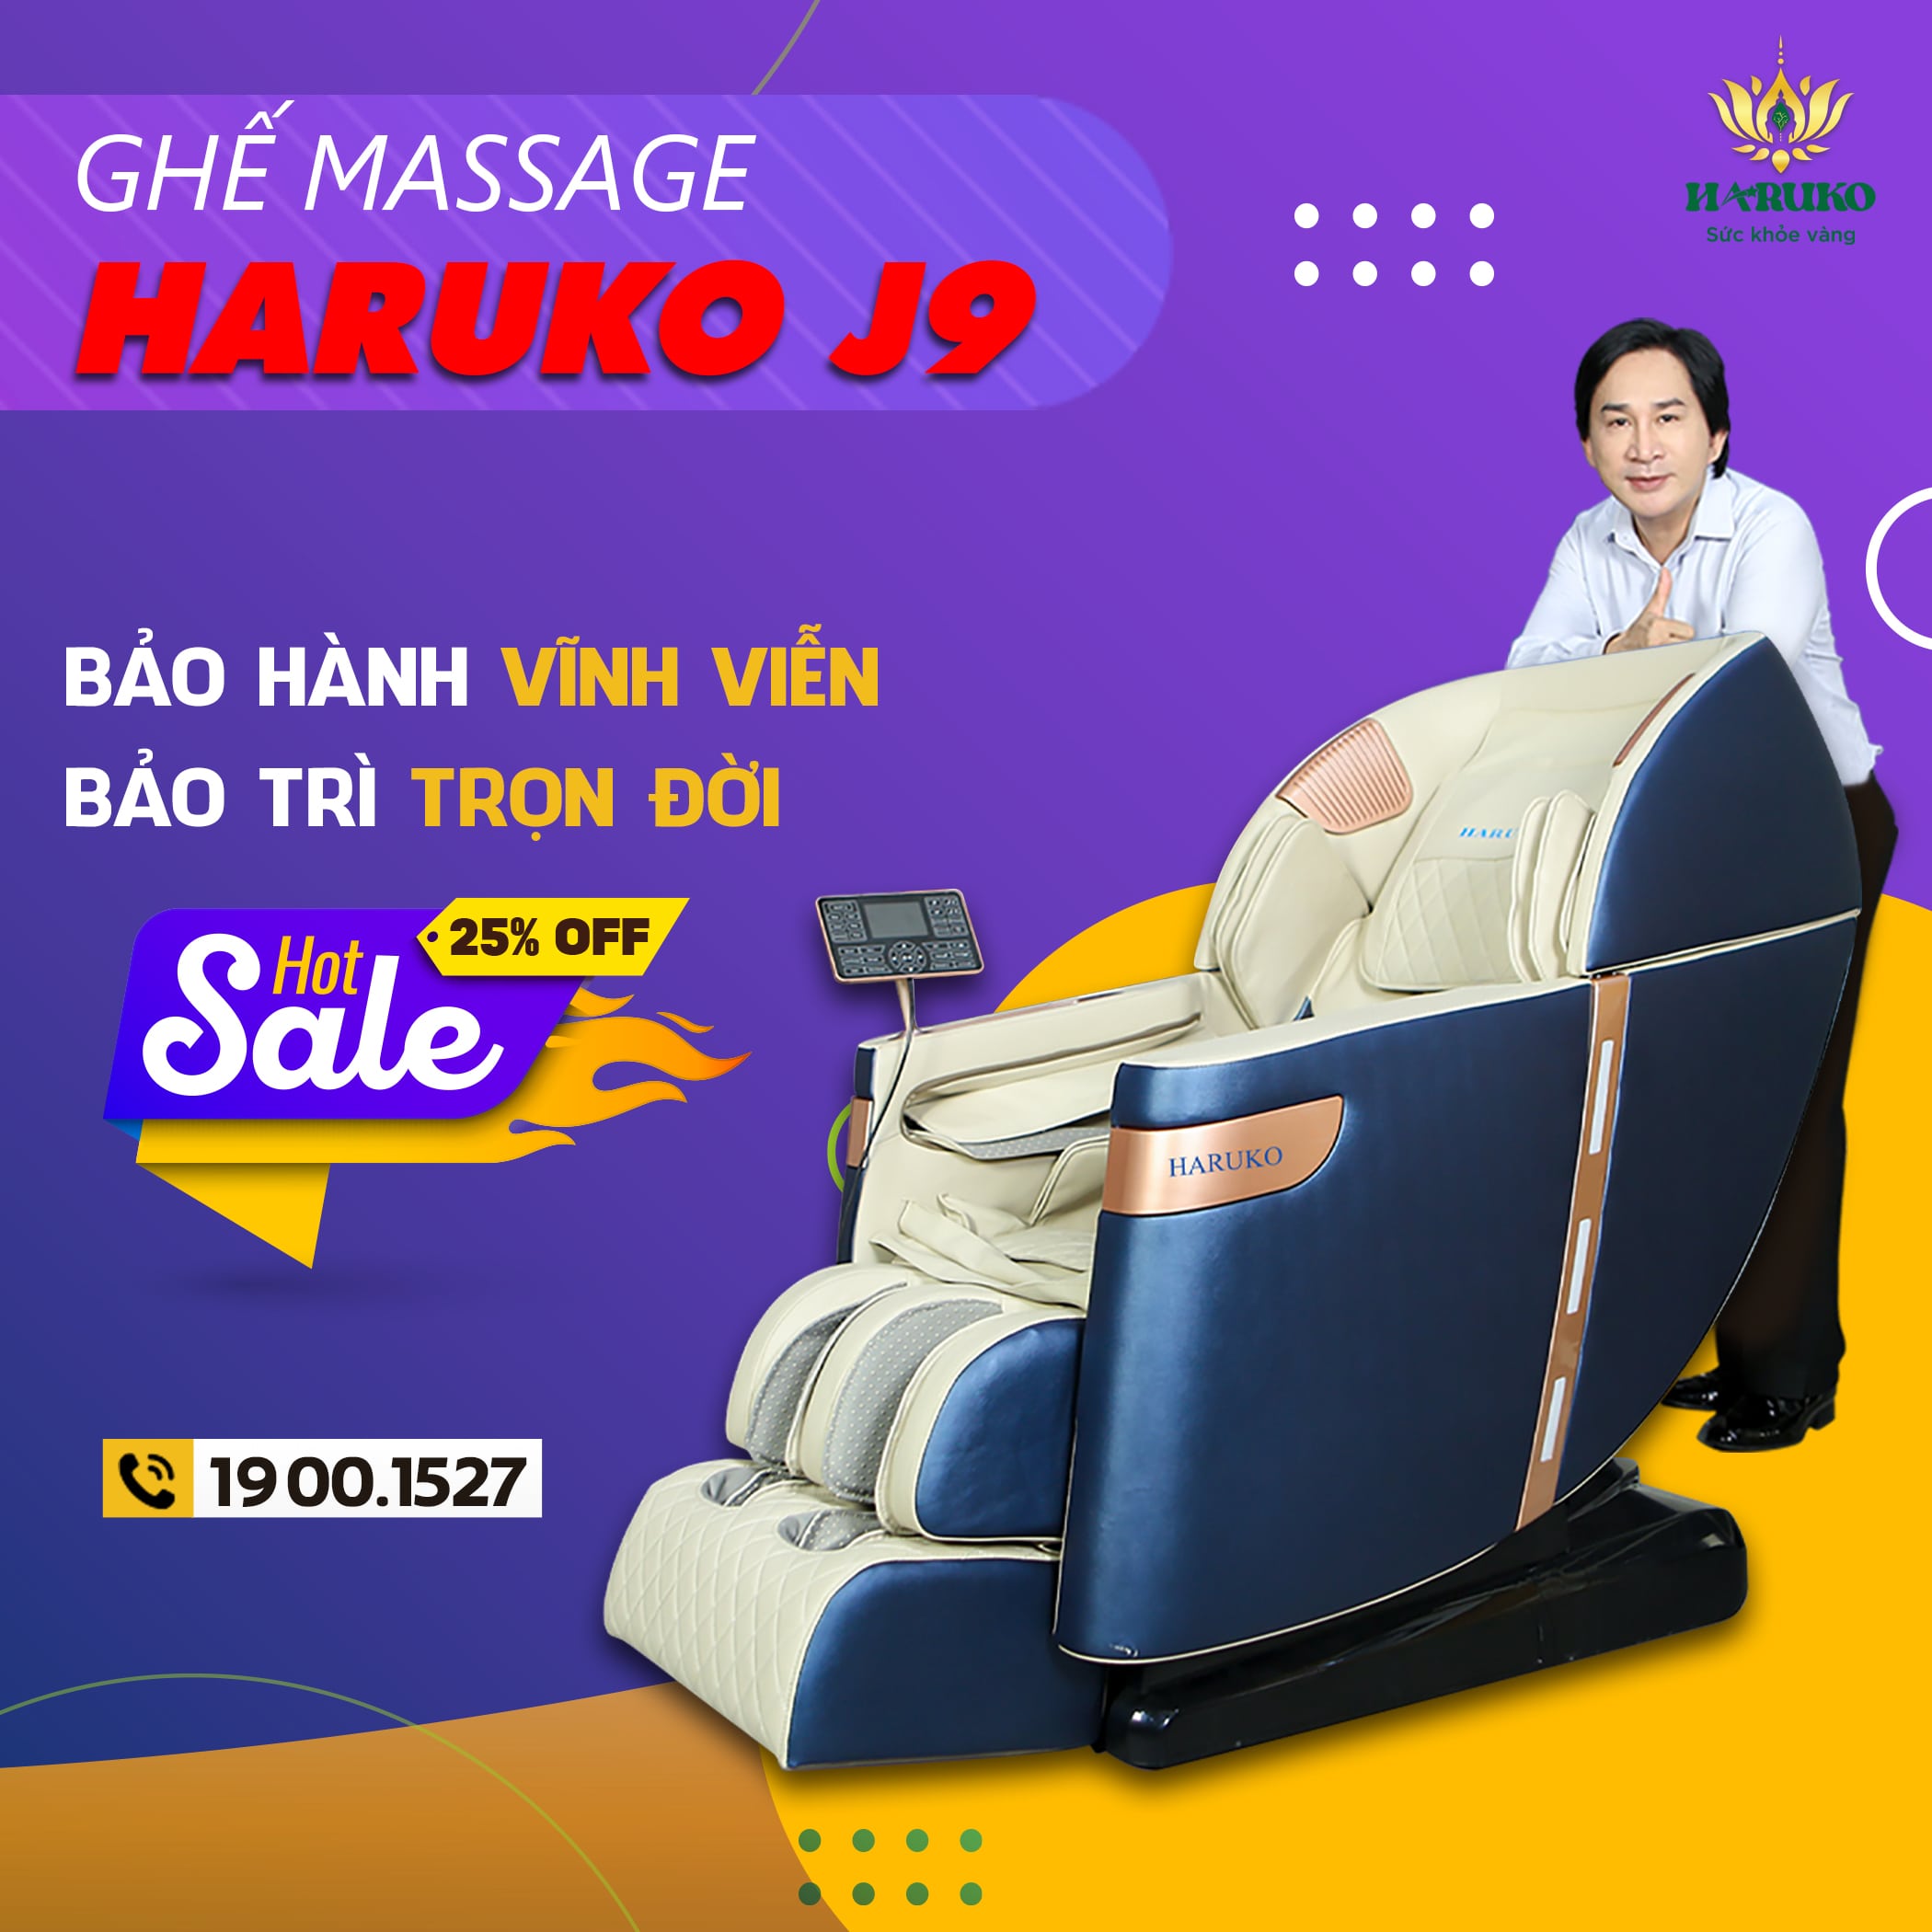 Ghế massage Haruko J9 là dòng sản phẩm thuộc phân khúc cao cấp được trang bị hệ thống con lăn 5D cao cấp hiện đại nhất